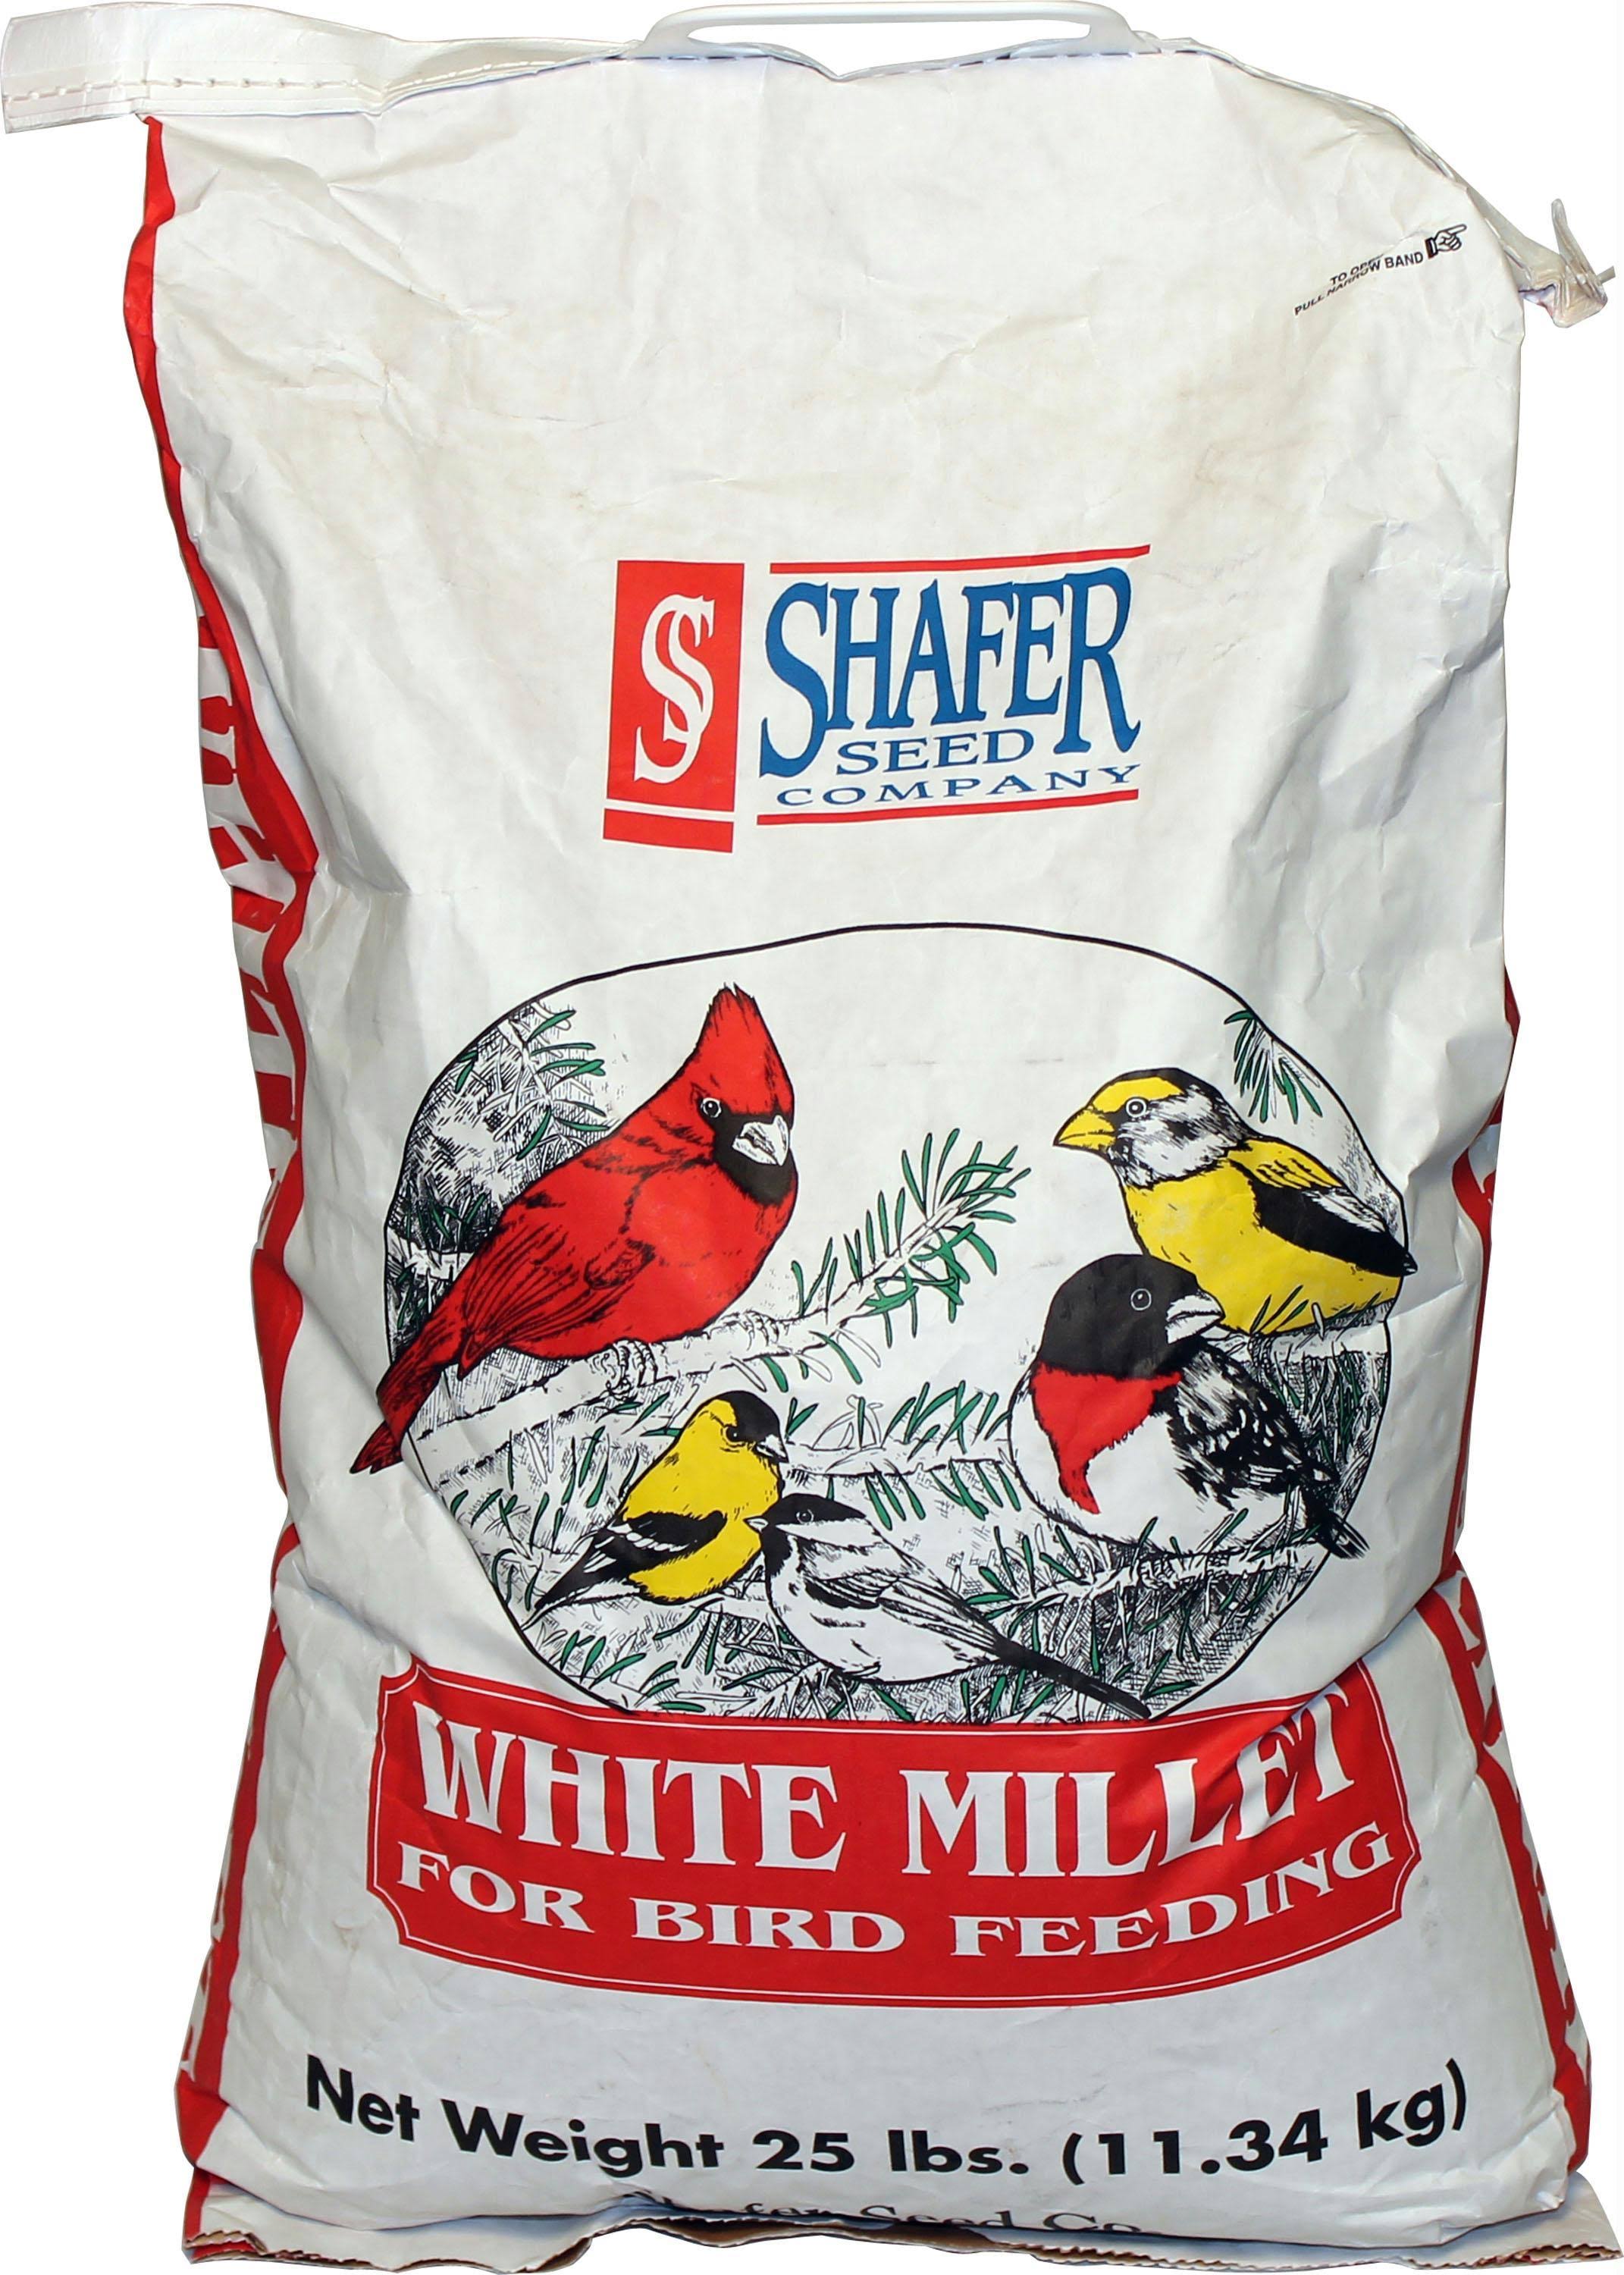 Shafer White Millet